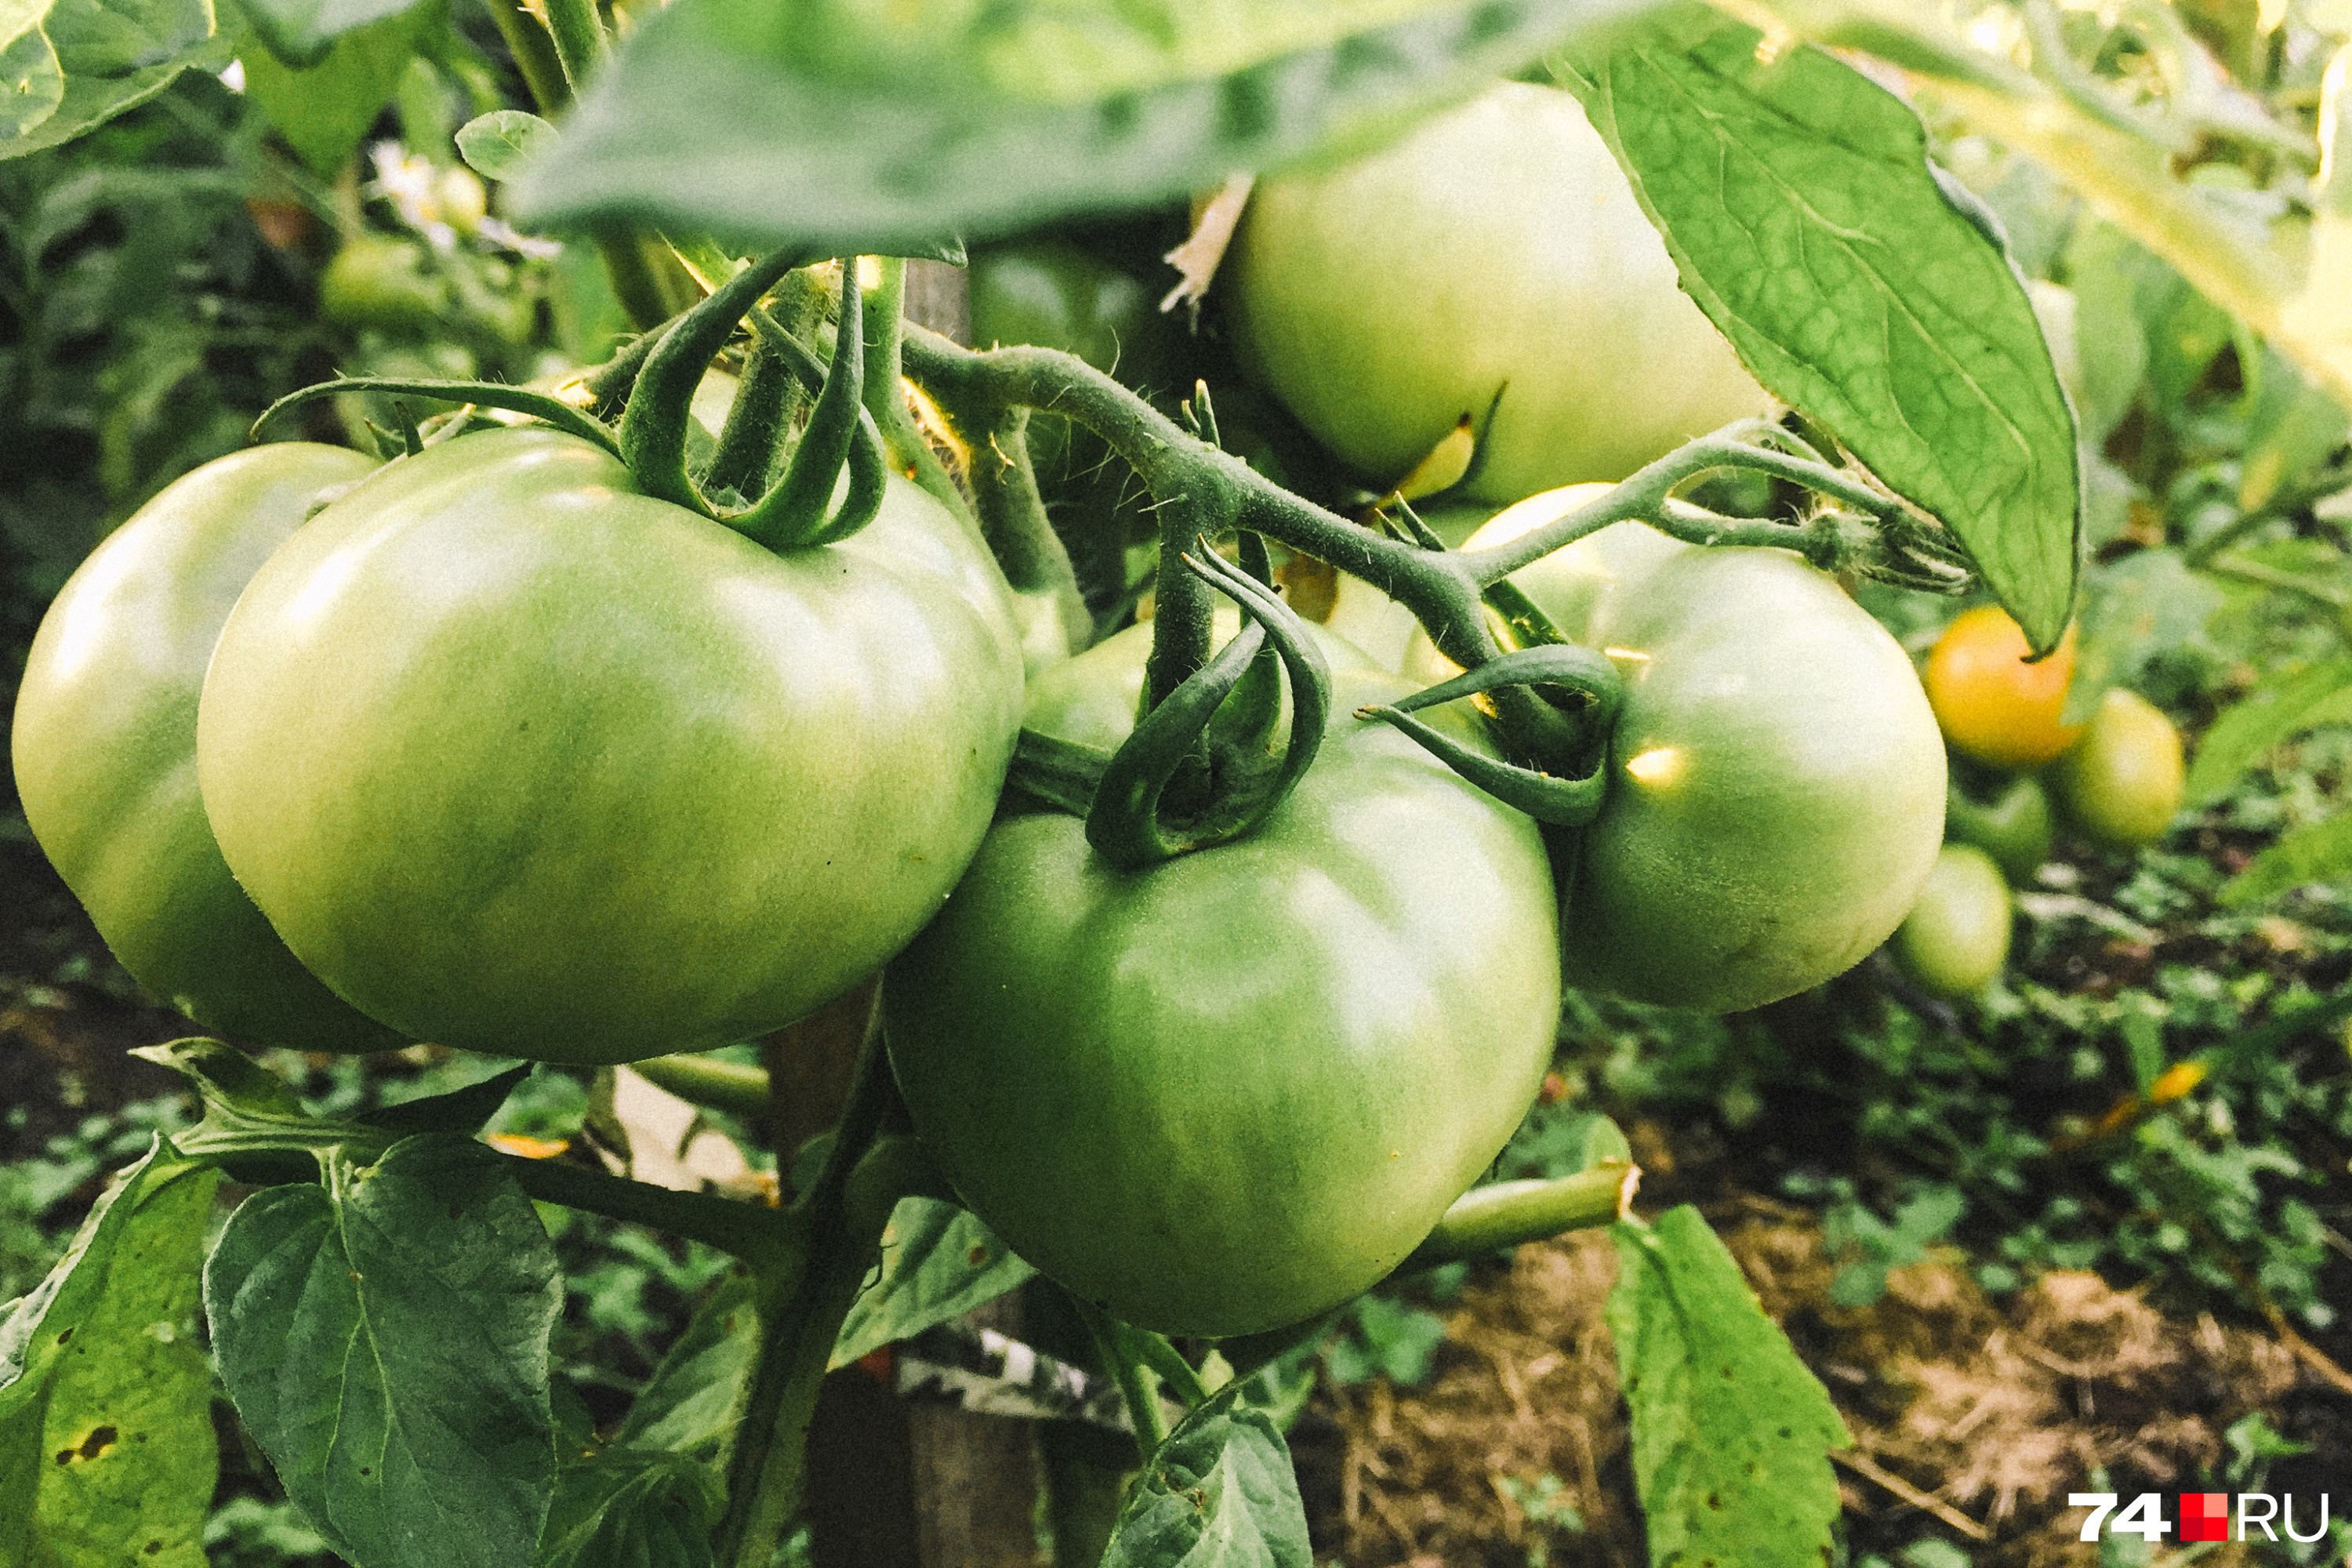 Как правильно выращивать помидоры, самые распространенные болезни томатов -22 июля 2021 - 74.ru